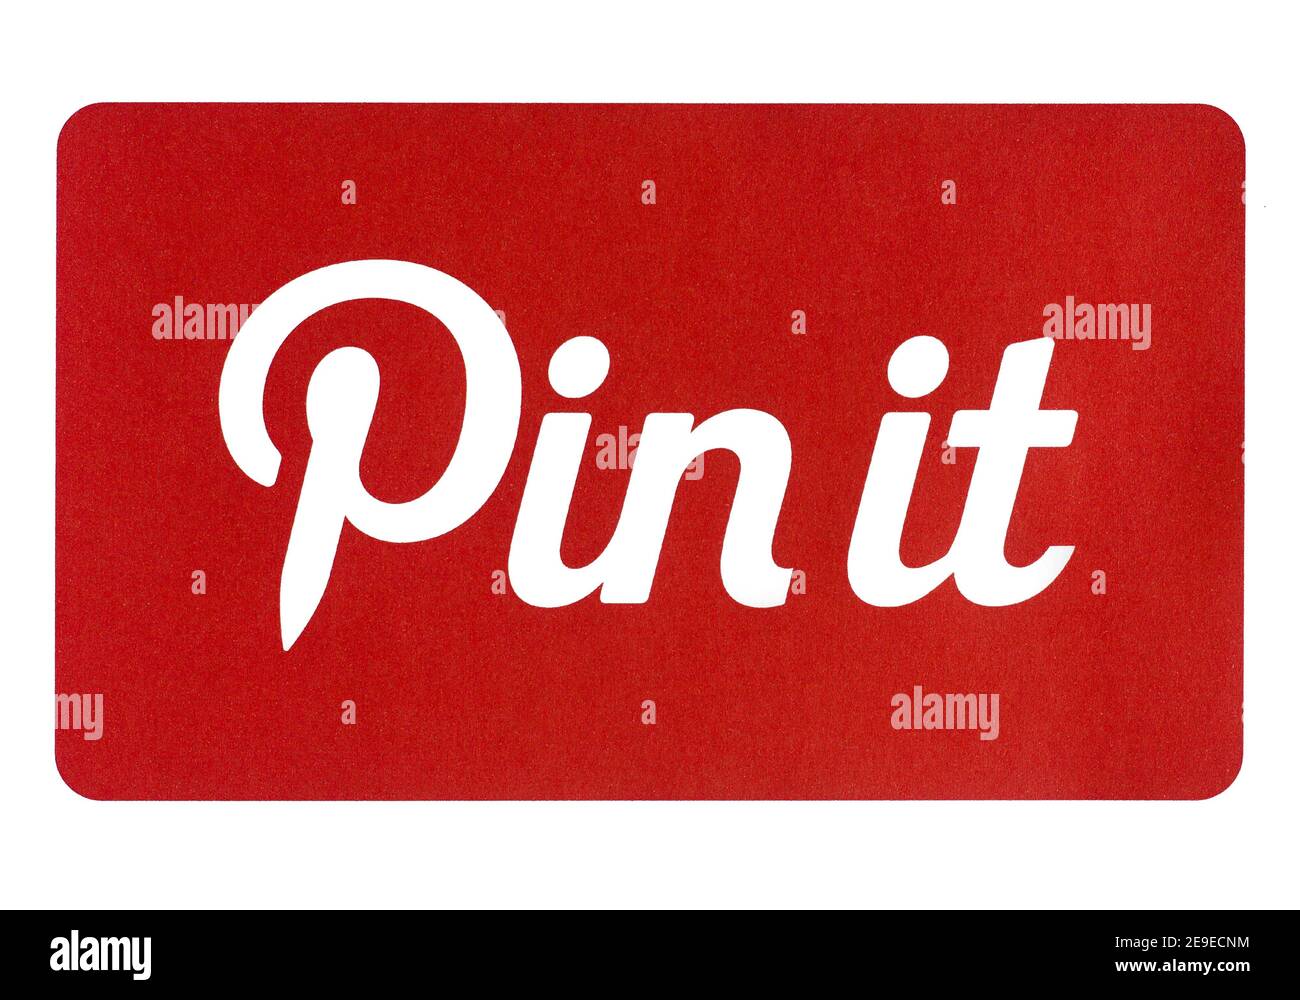 Foto del logo de Pinterest 'pinte it' impresa en papel y colocada sobre fondo blanco. Sólo para uso editorial Foto de stock